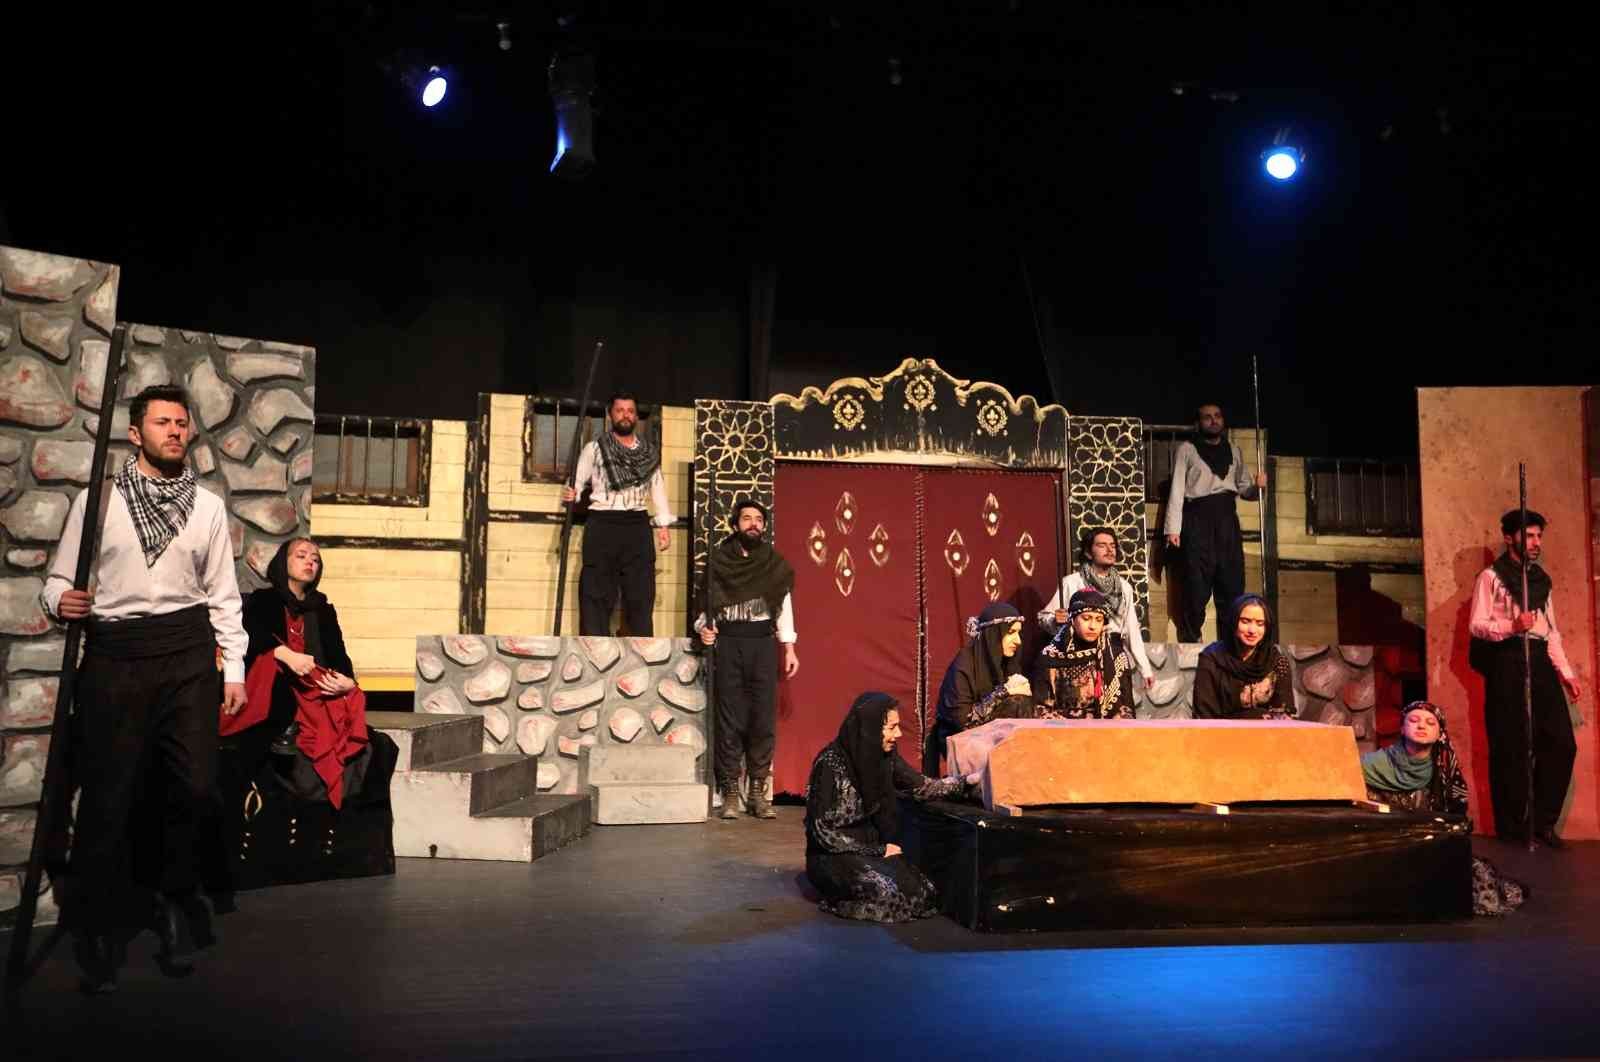 Van Büyükşehir Belediyesinin tiyatro günleri “Taziye” oyunu ile başladı #van